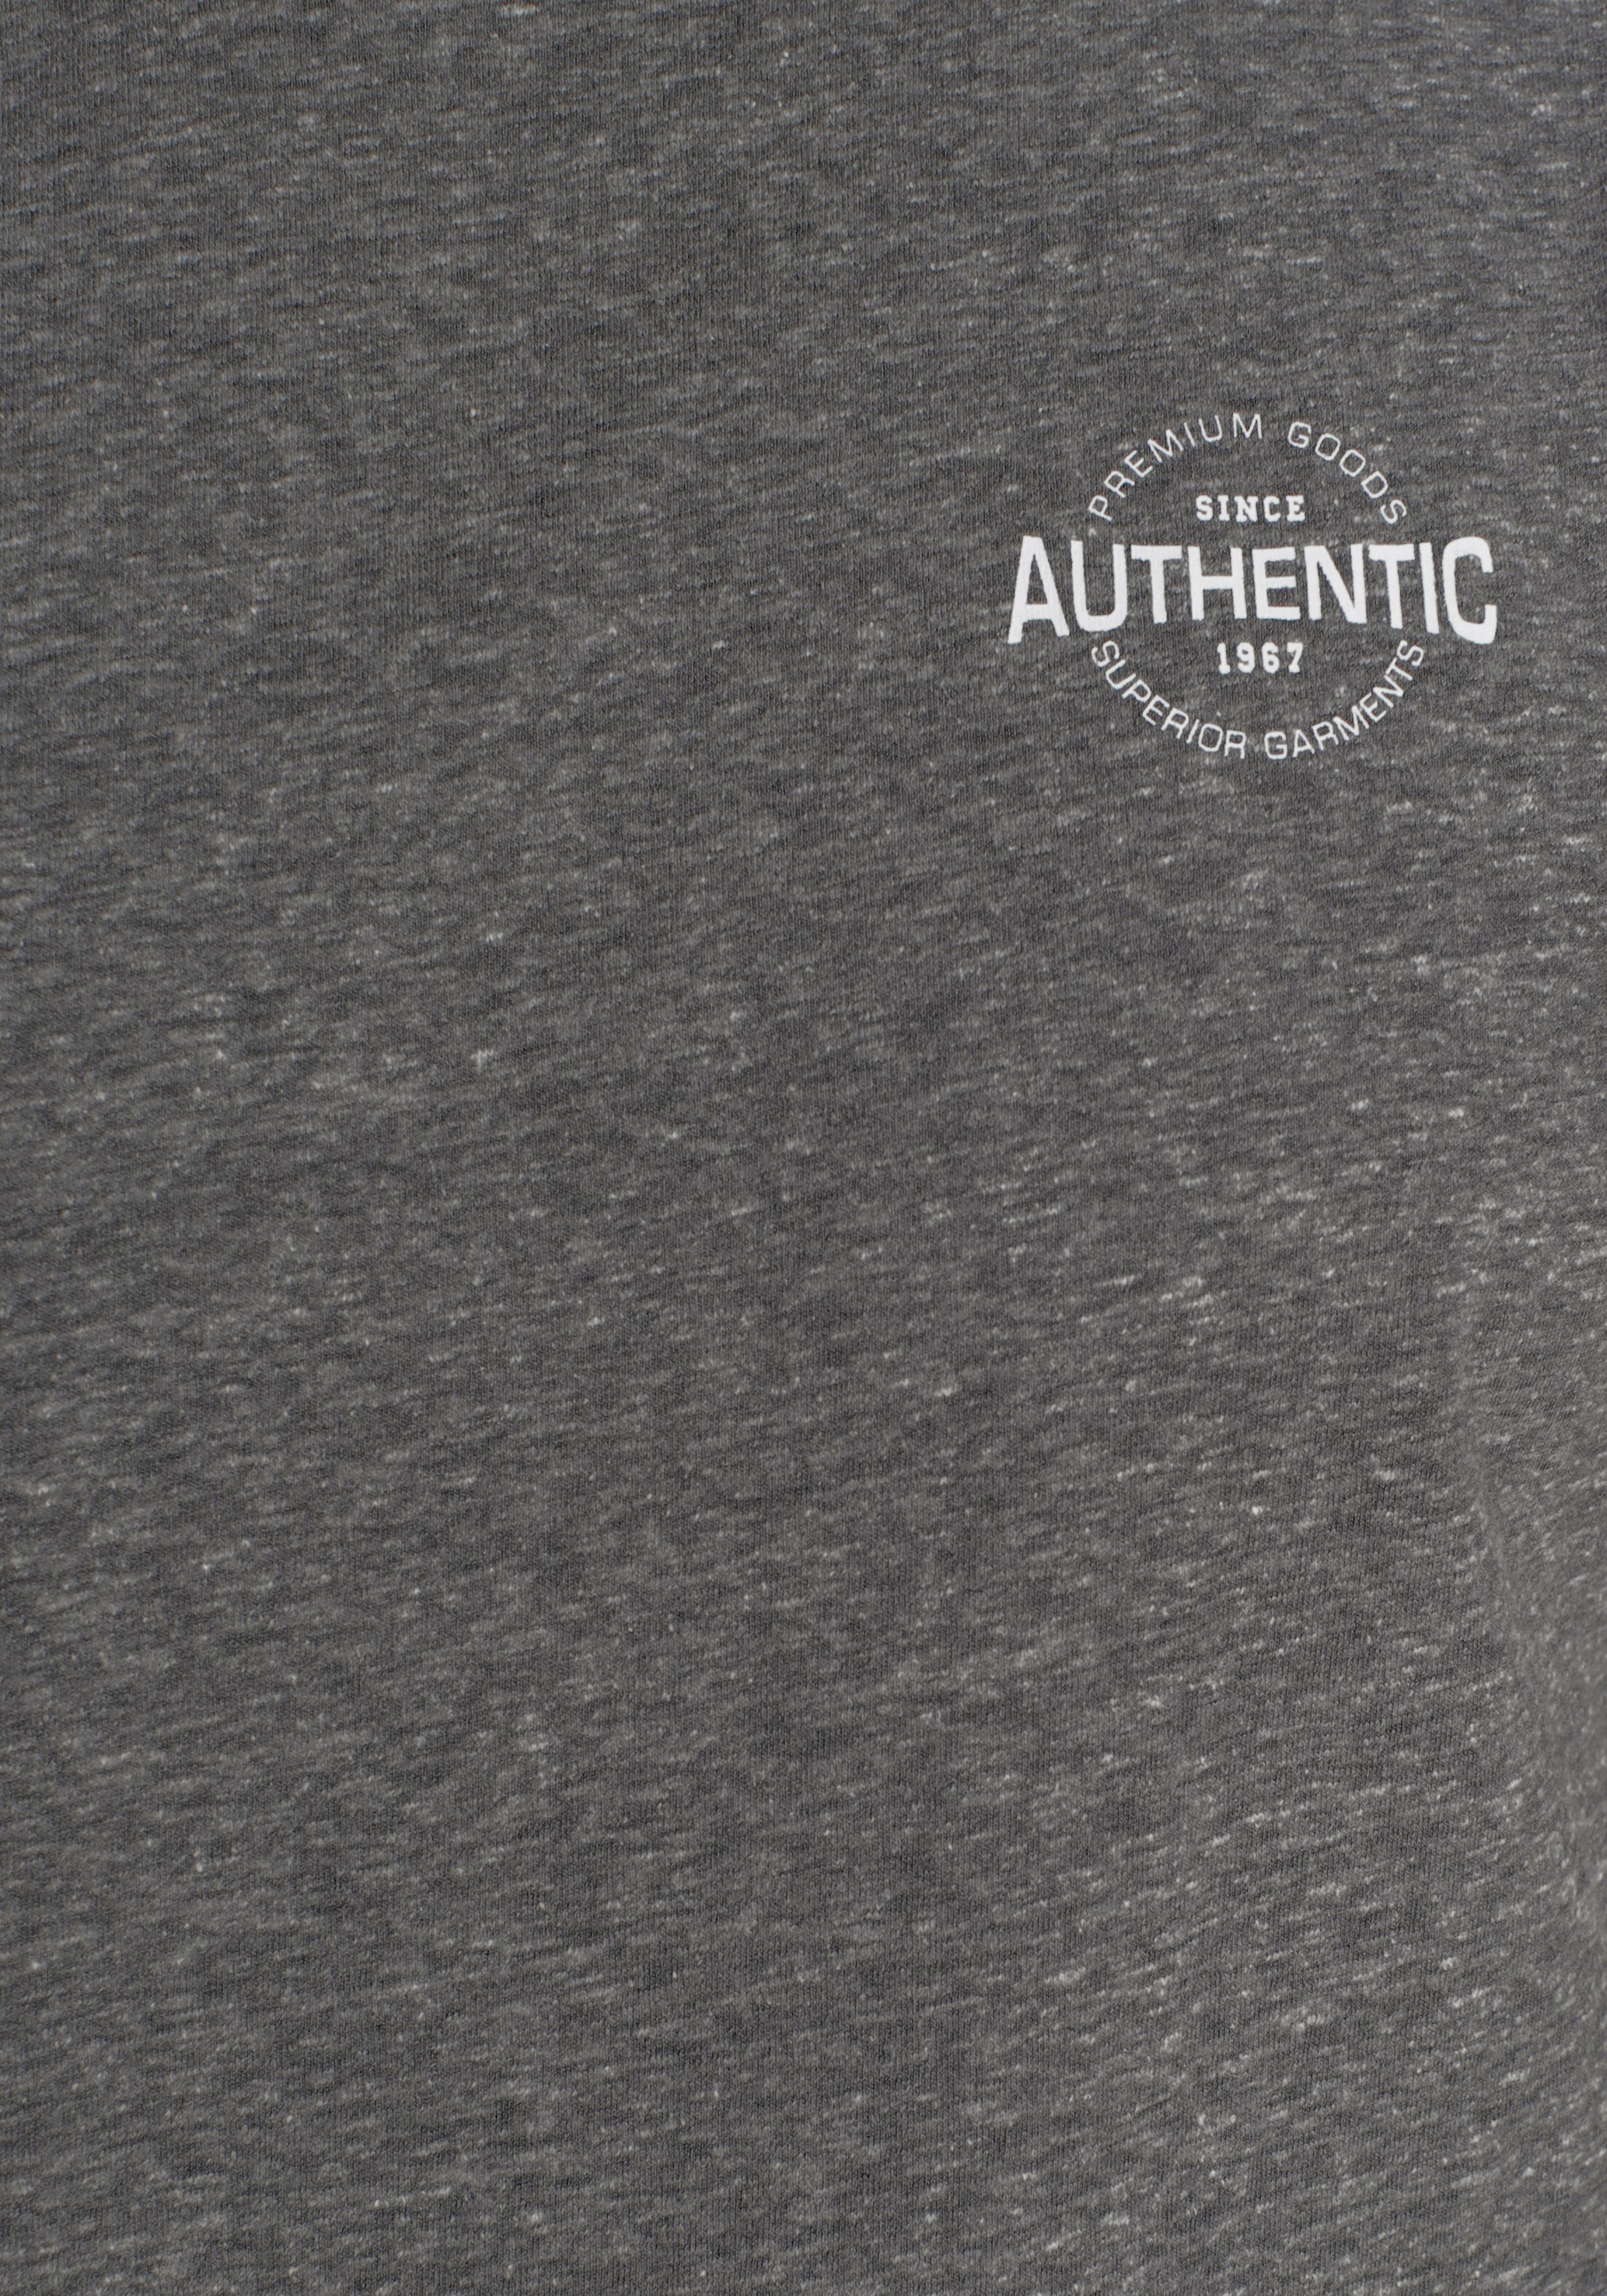 AJC T-Shirt in besonderer Logo Melange mit Print meliert und anthrazit Optik